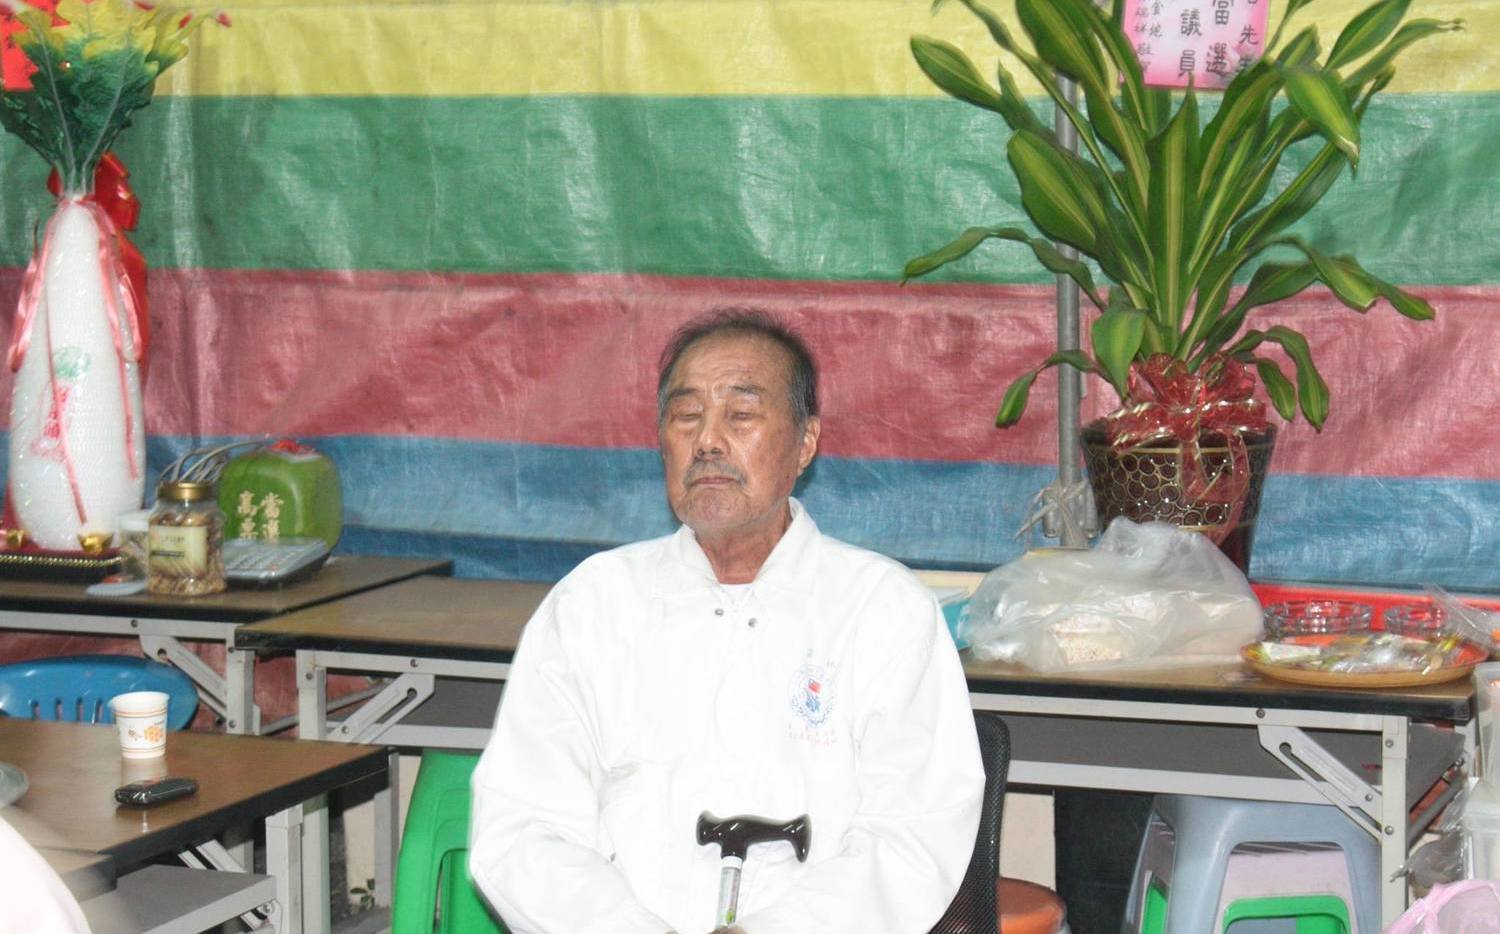 韓國瑜岳父李日貴病逝享壽85歲 家屬低調治喪 | 政治 | 新頭殼 Ne